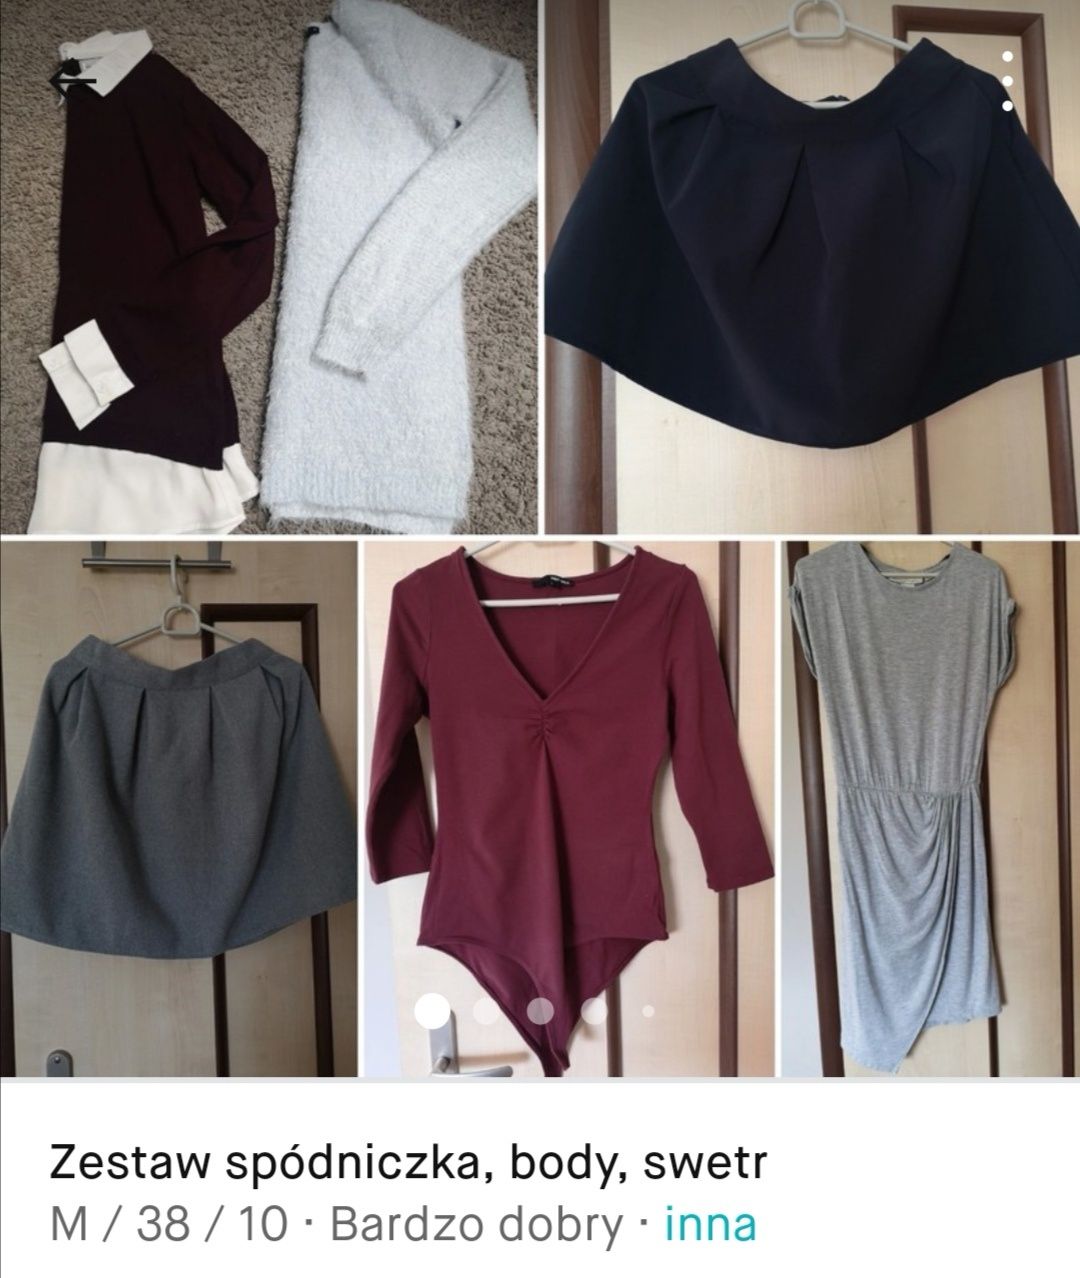 Zestaw, spódniczka, swetry, body sukienka